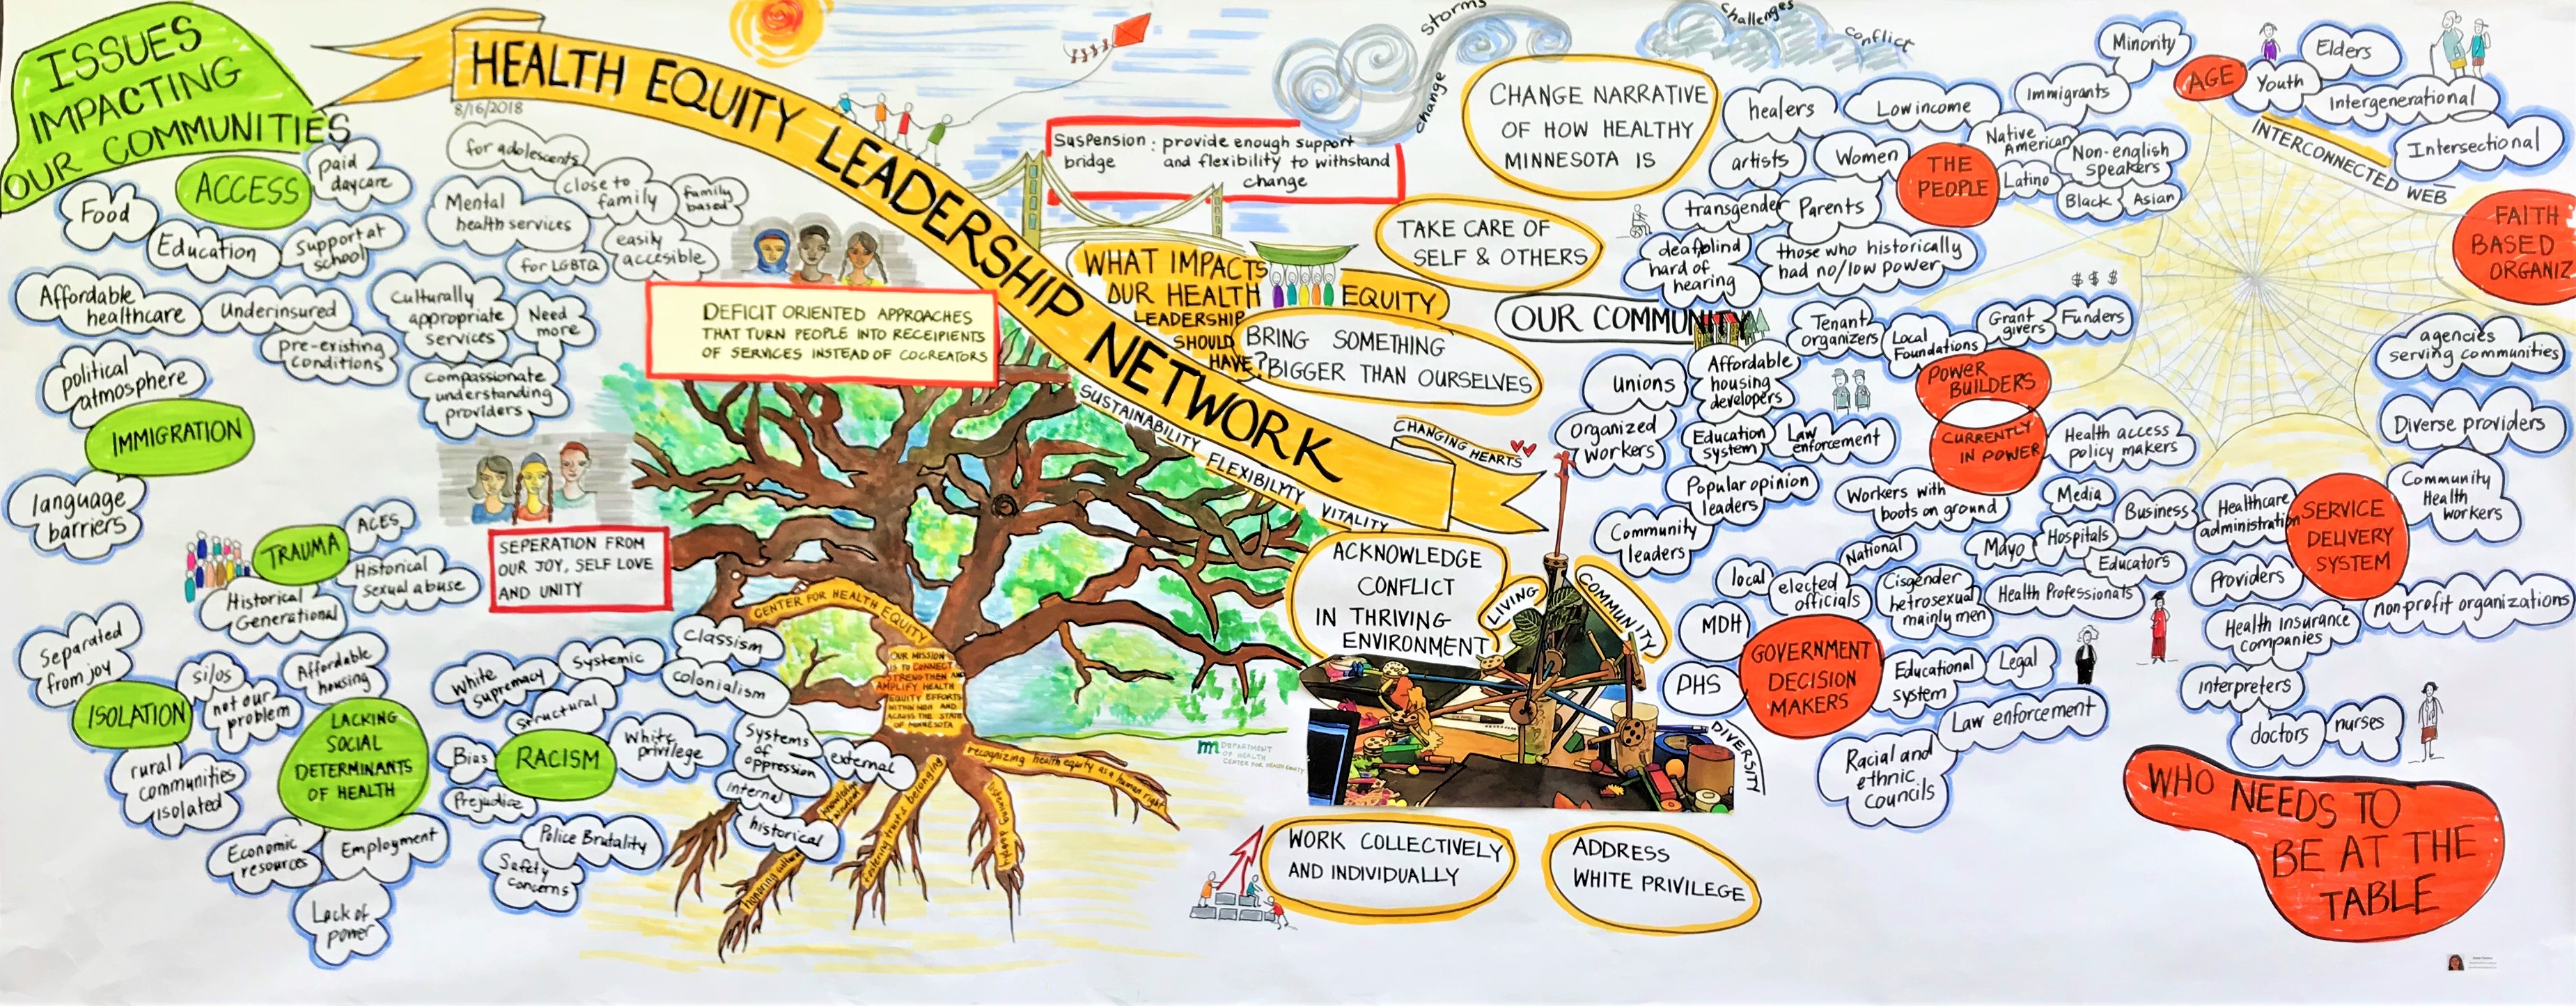 visual harvest of network ideas